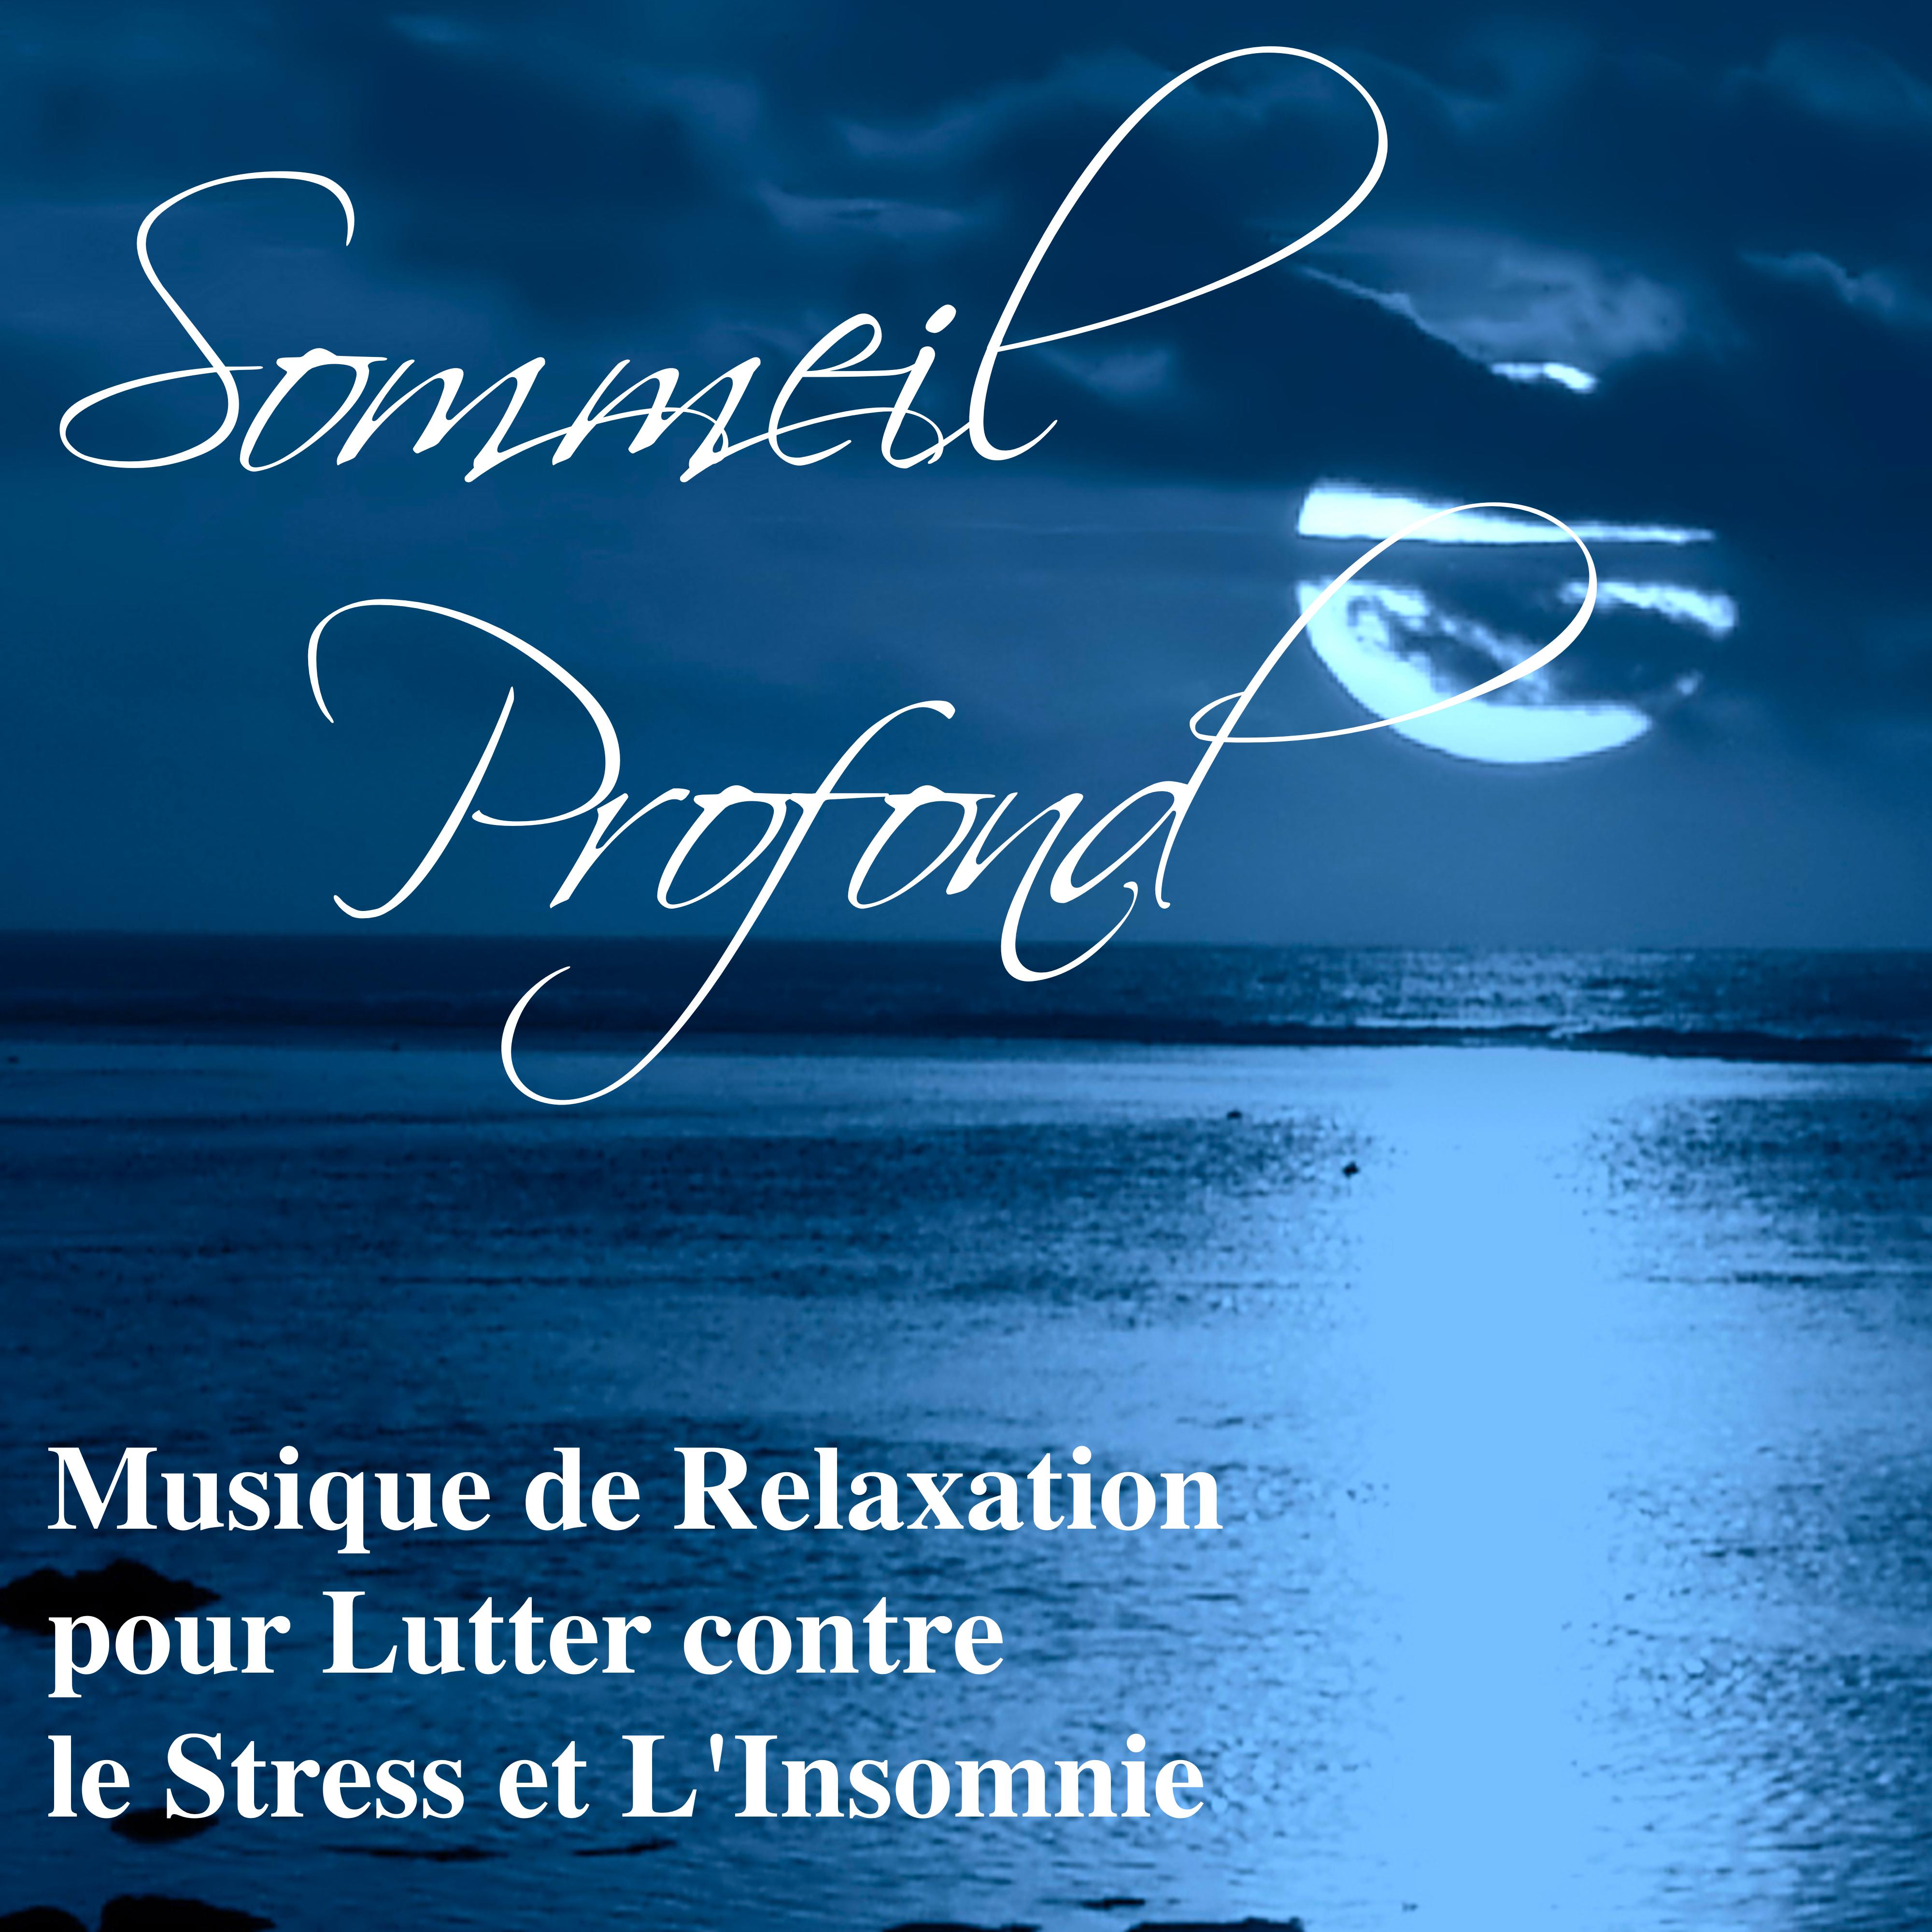 Sommeil Profond: Musique de Relaxation pour Lutter contre le Stress et L' Insomnie, Chansons de Piano Douce pour se De tendre